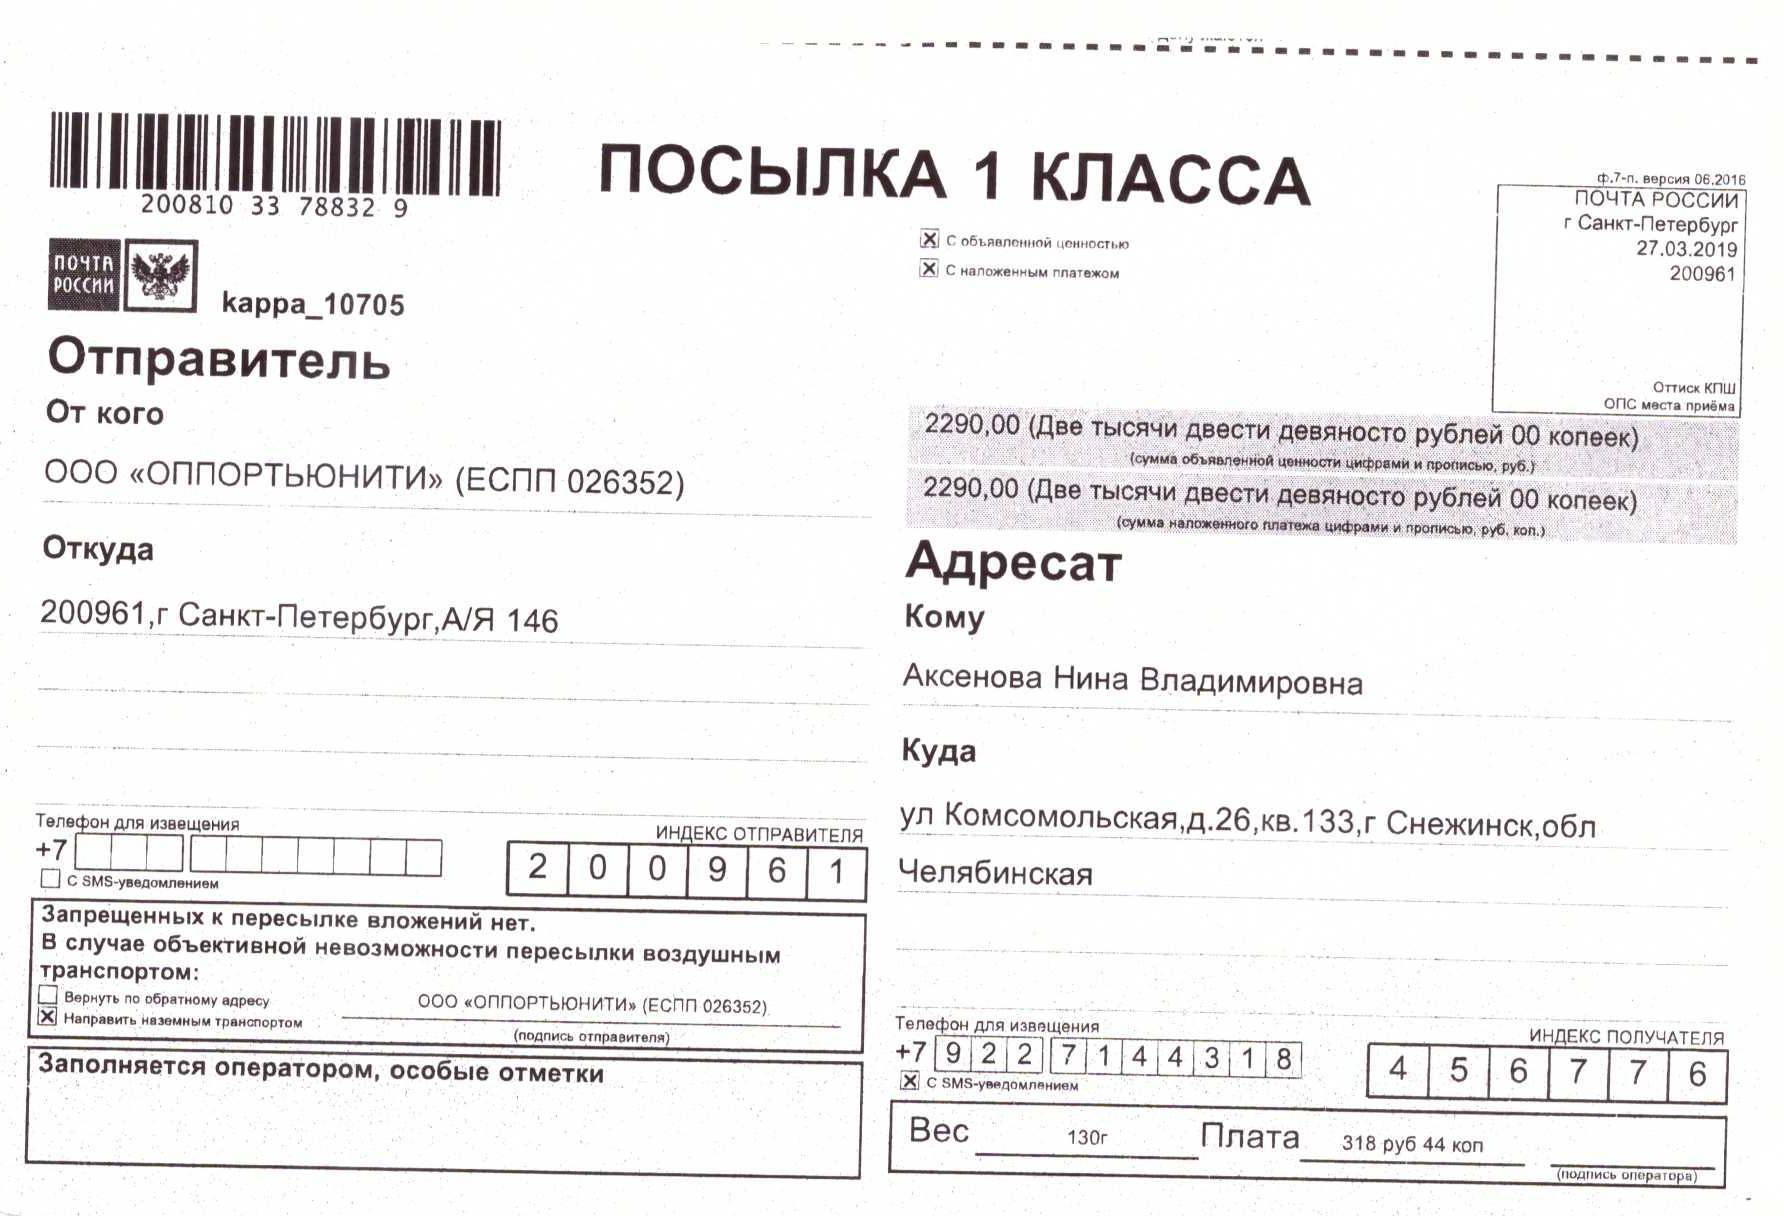 Наложенный платеж почта россии — отправить посылку — адрес, индекс